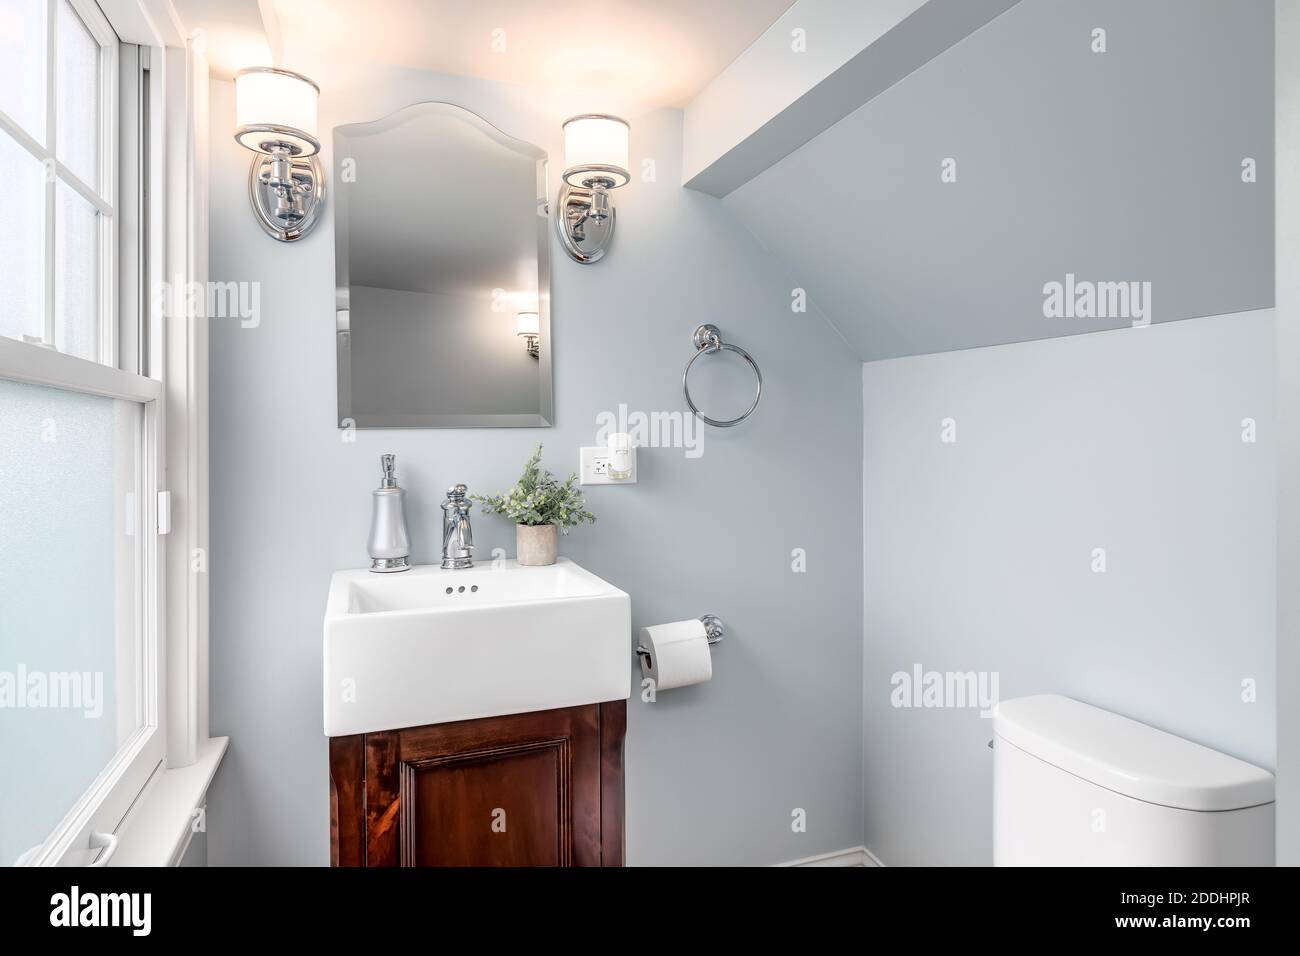 Une petite salle de bains avec des murs bleus, un meuble-lavabo en bois, des fleurs sur le lavabo blanc et des lumières montées à côté du miroir. Banque D'Images